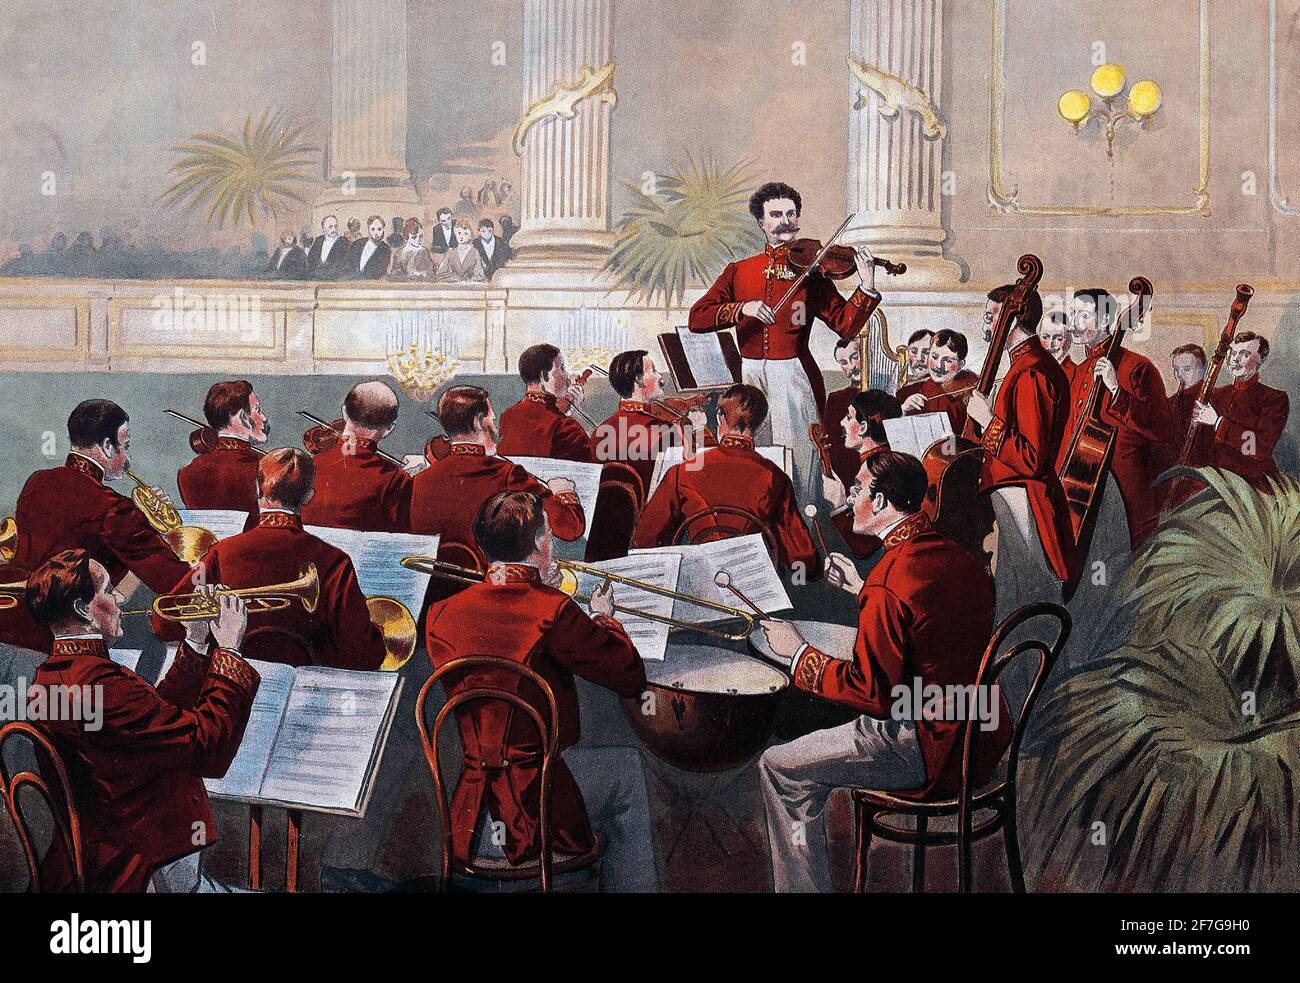 Johann Strauss II (1825-1899) y su banda musical en la corte Bola en Viena - Austria - 1888 Foto de stock